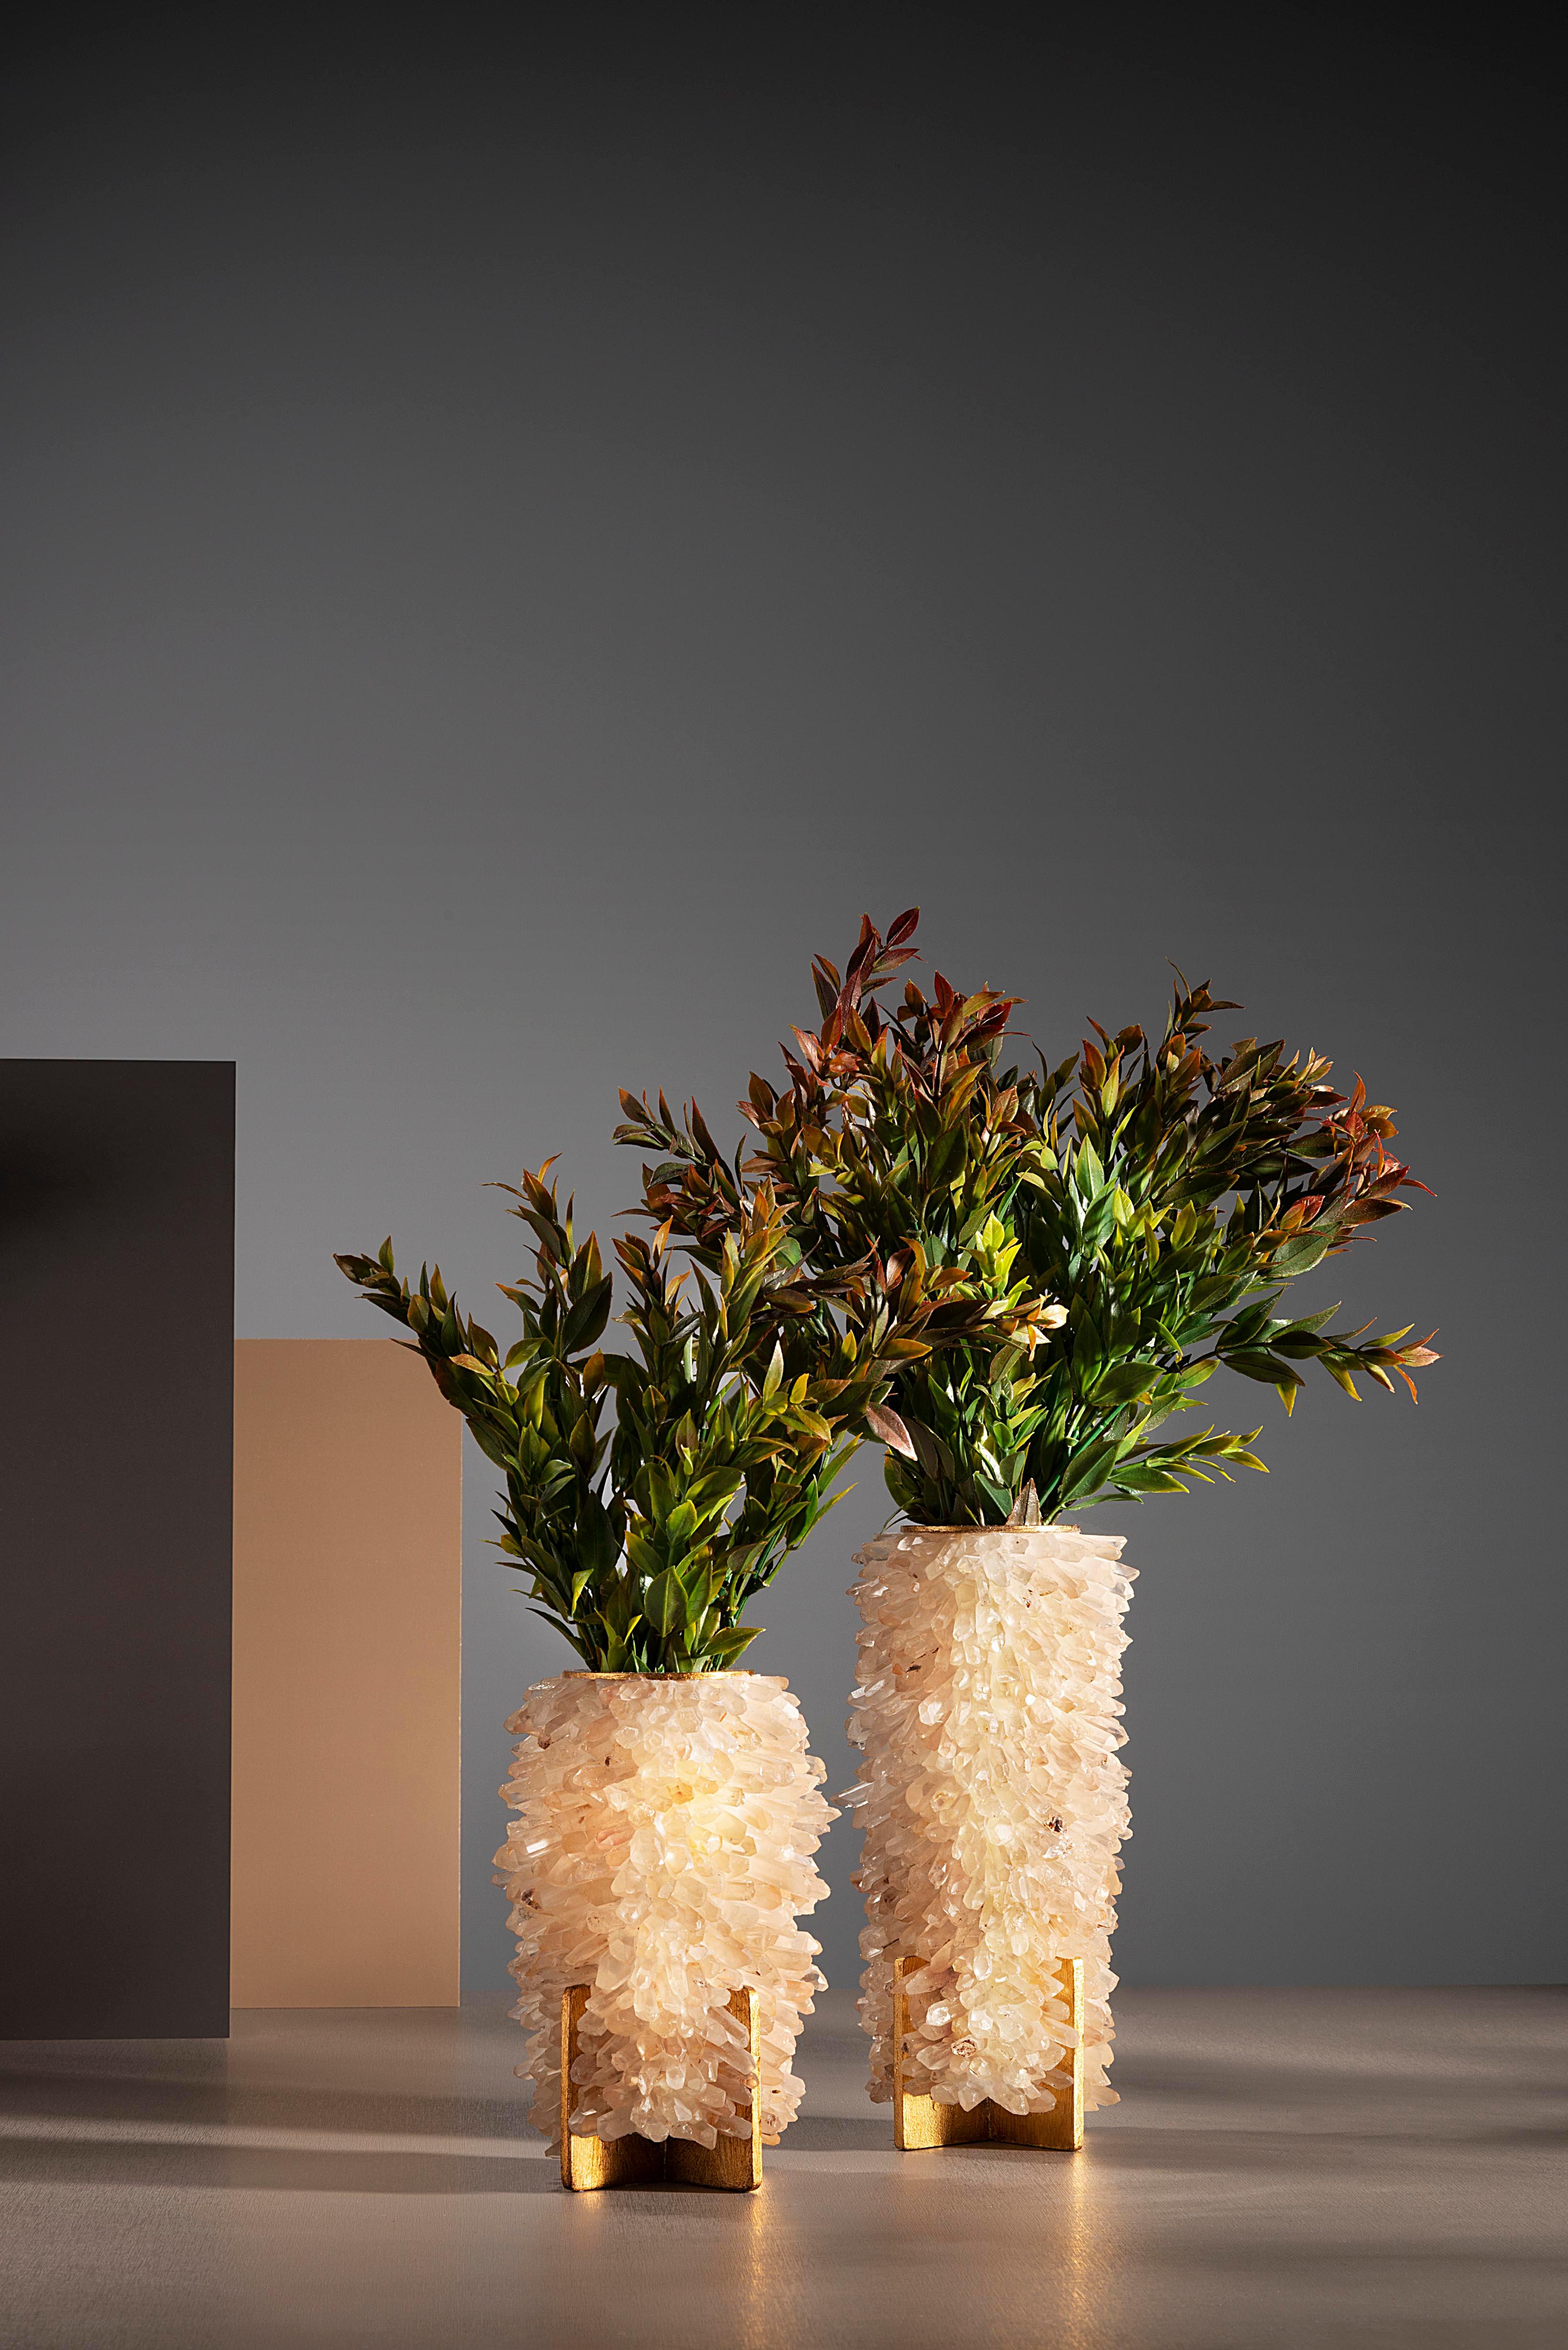 Petit vase et bougeoir, petites pointes de quartz par Aver 
Dimensions : D 11 x H 18 cm
MATERIAL : Quartz, acier, chlorure de polyvinyle, résine.
 